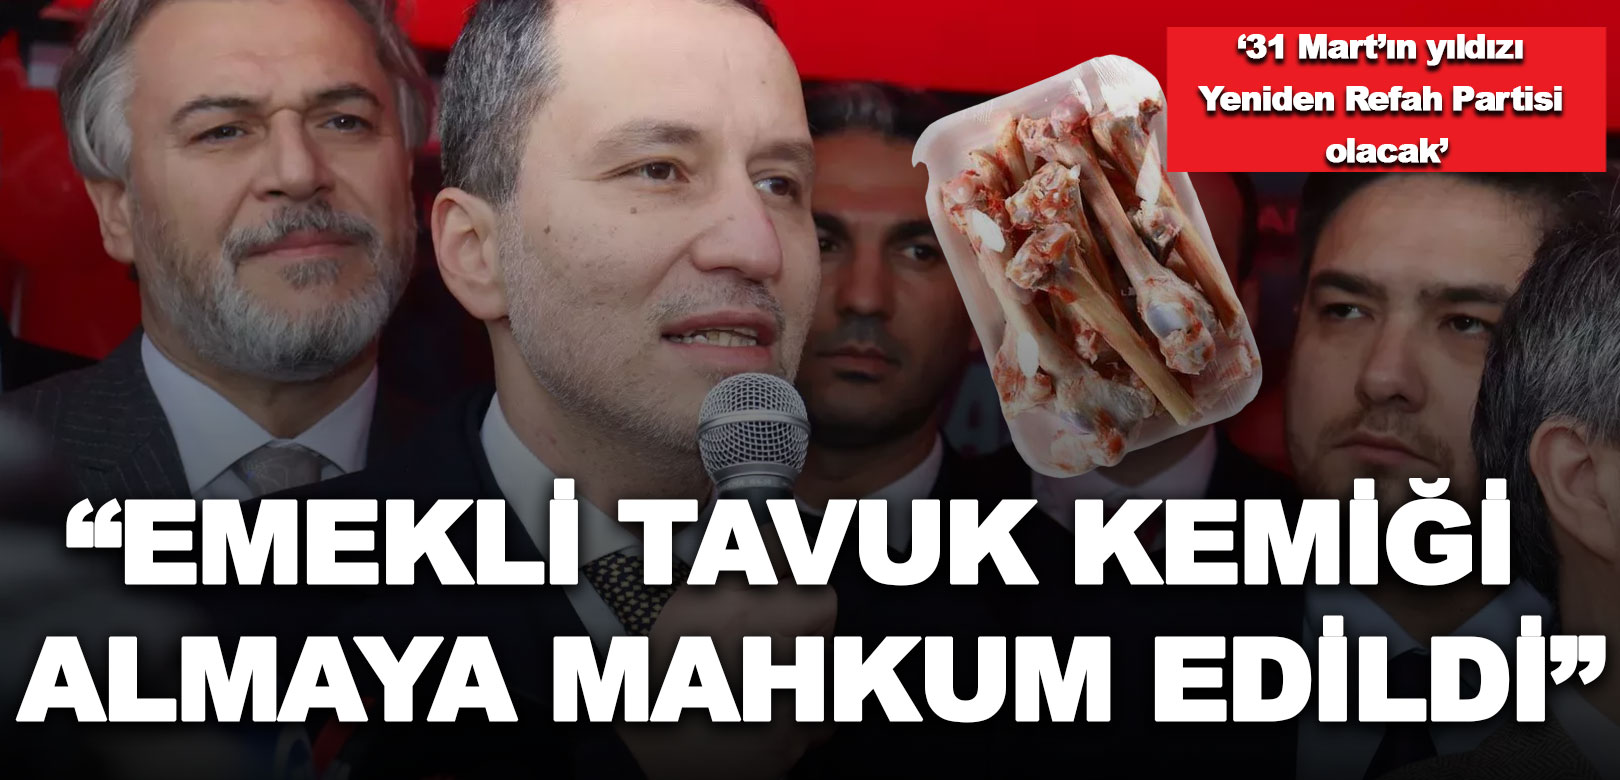 Fatih Erbakan: Emekli tavuk kemiği almaya mahkum edildi